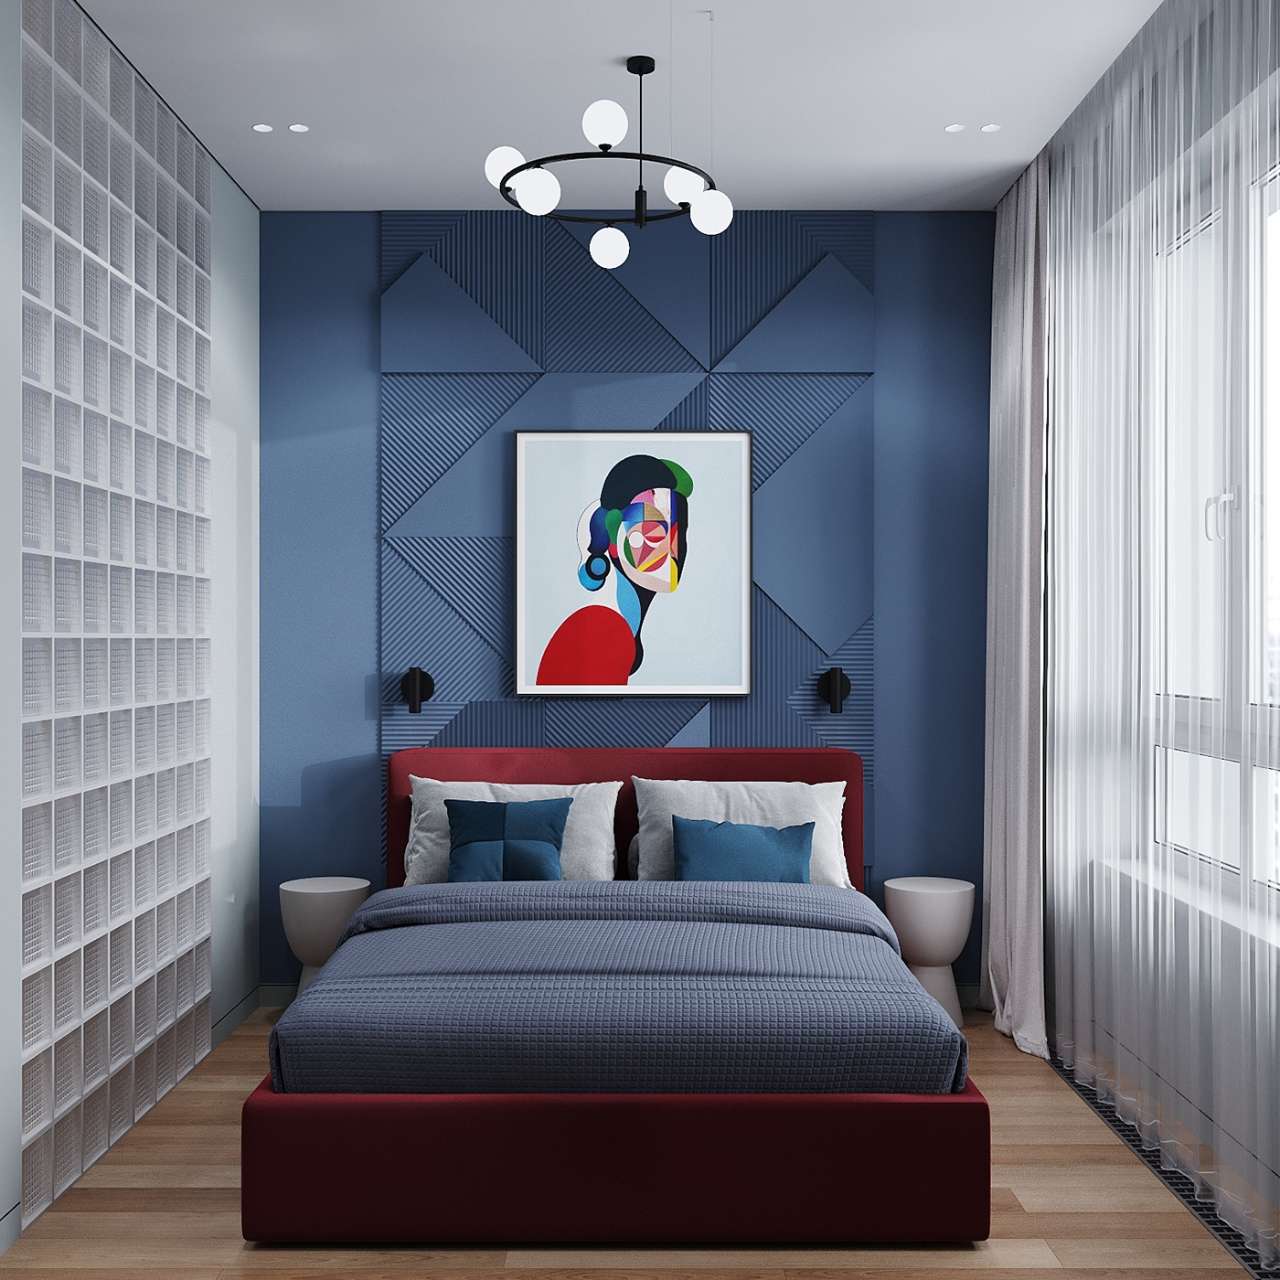 Phòng ngủ phong cách Bauhaus với giường ngủ màu đỏ đô nổi bật